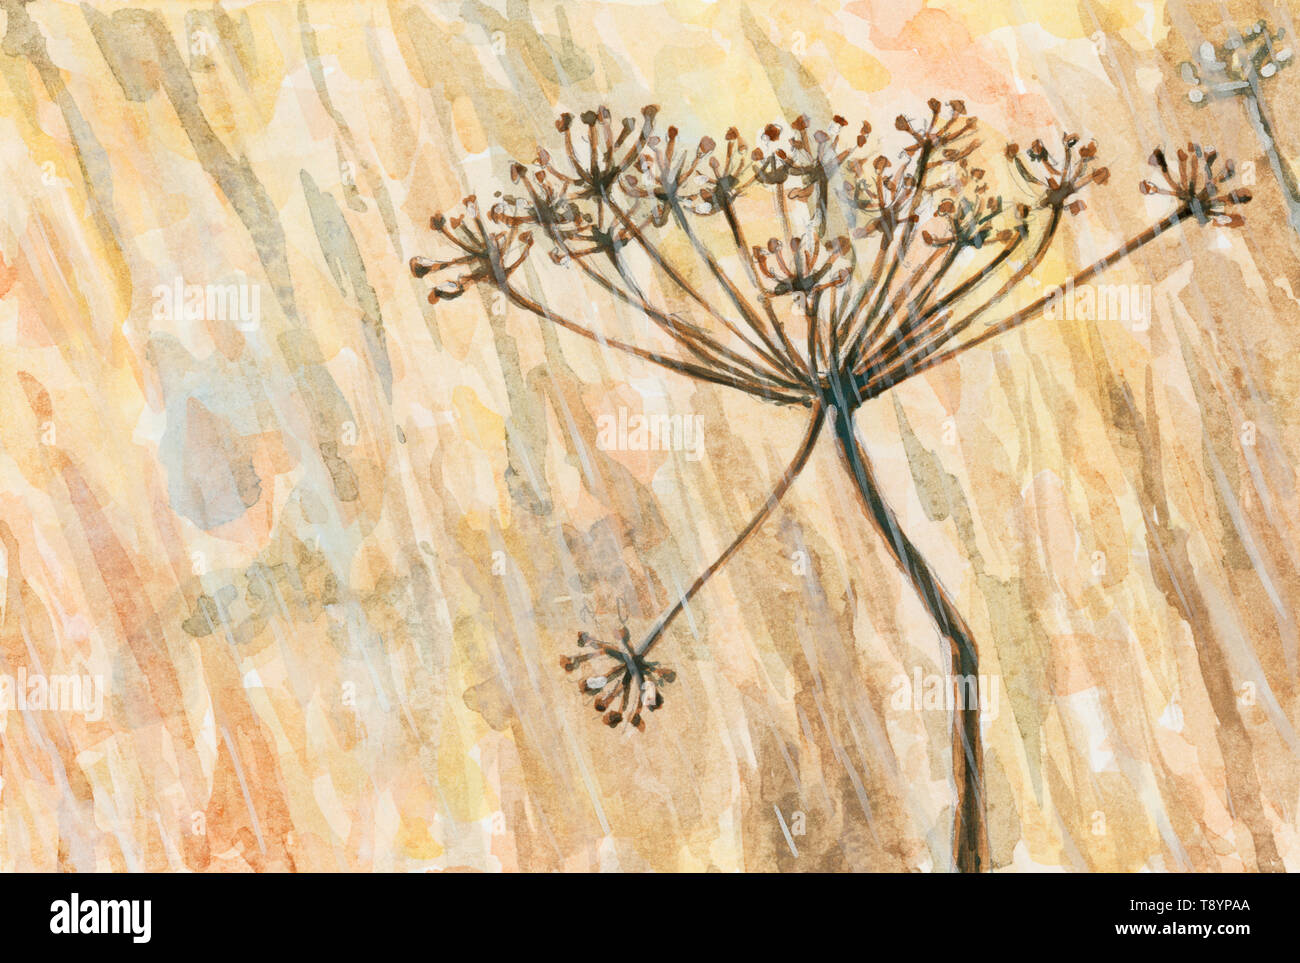 Dolde einer unspezifizierten Anlage von Apiaceae (umbelliferae) Familie in einer regnerischen Wetter. Aquarell und Gouache auf Papier. Stockfoto